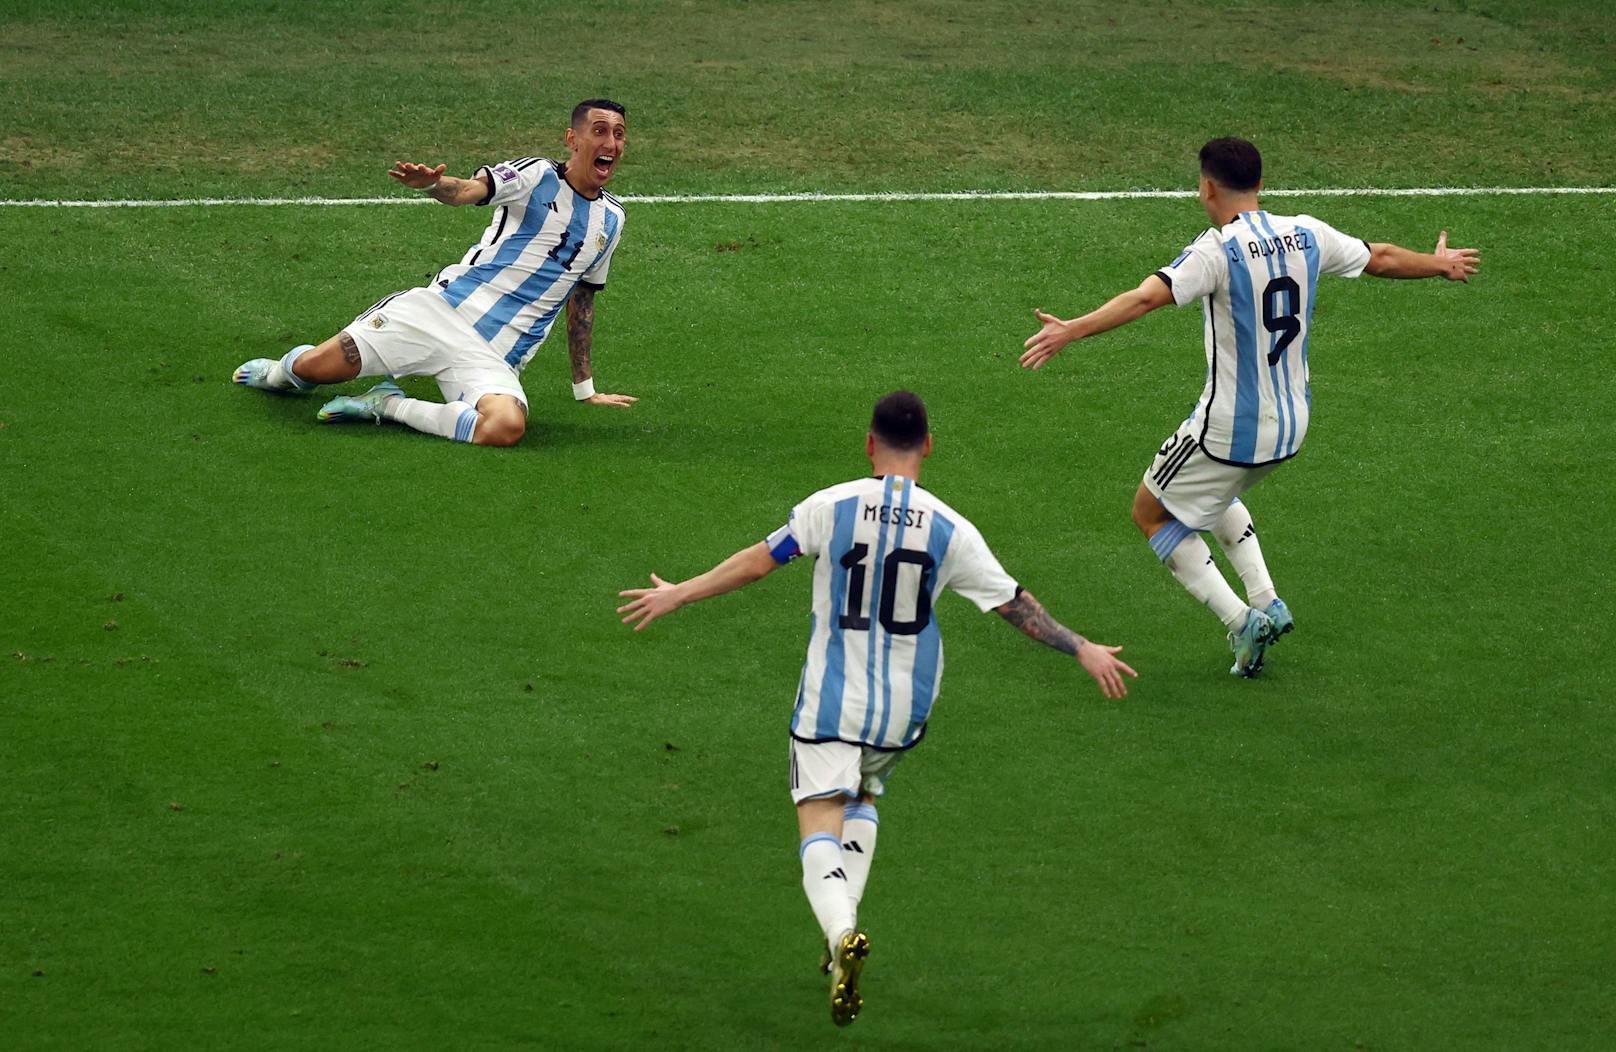 Frankreich am Boden! Argentinien bleibt hellwach, kontert den amtierenden Weltmeister eiskalt aus. Angel Di Maria vollendet eine traumhafte Kombination über Messi und Mac Allister zum 2:0 (36.).